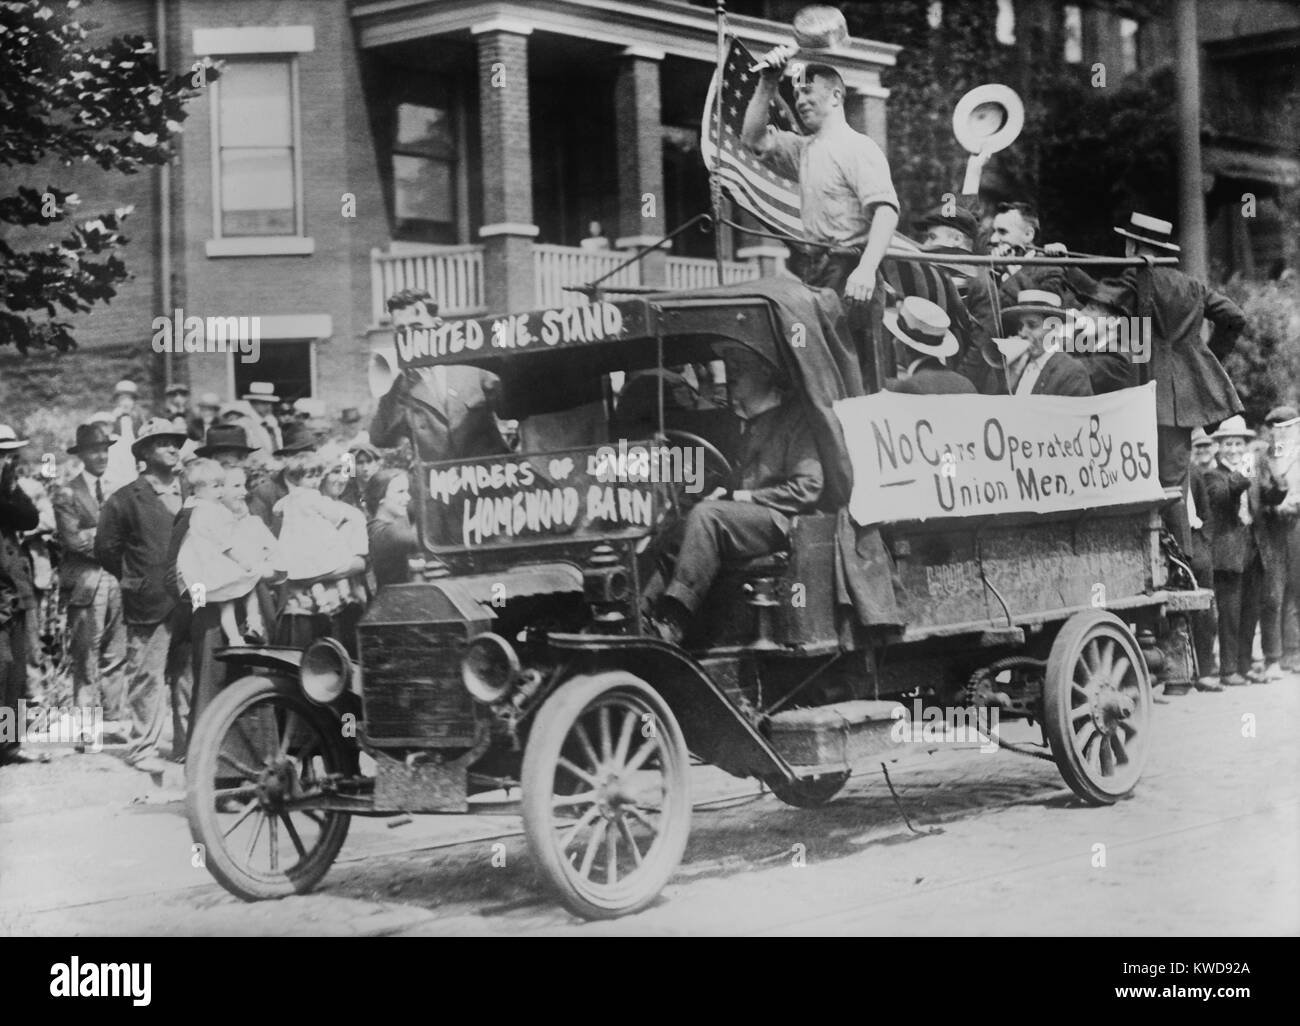 Pittsburgh Straßenbahn Streik, August 26, 1919. Dirigenten und motormen von der Parade der 'Homewood Scheune' in Fahrzeugen mit amerikanischer Flagge. Nicht-tödliche Gewalt an diesem Tag gefolgt, wenn das Unternehmen versucht Straßenbahnen mit Streikbrecher (BSLOC 2016 8 40) Stockfoto